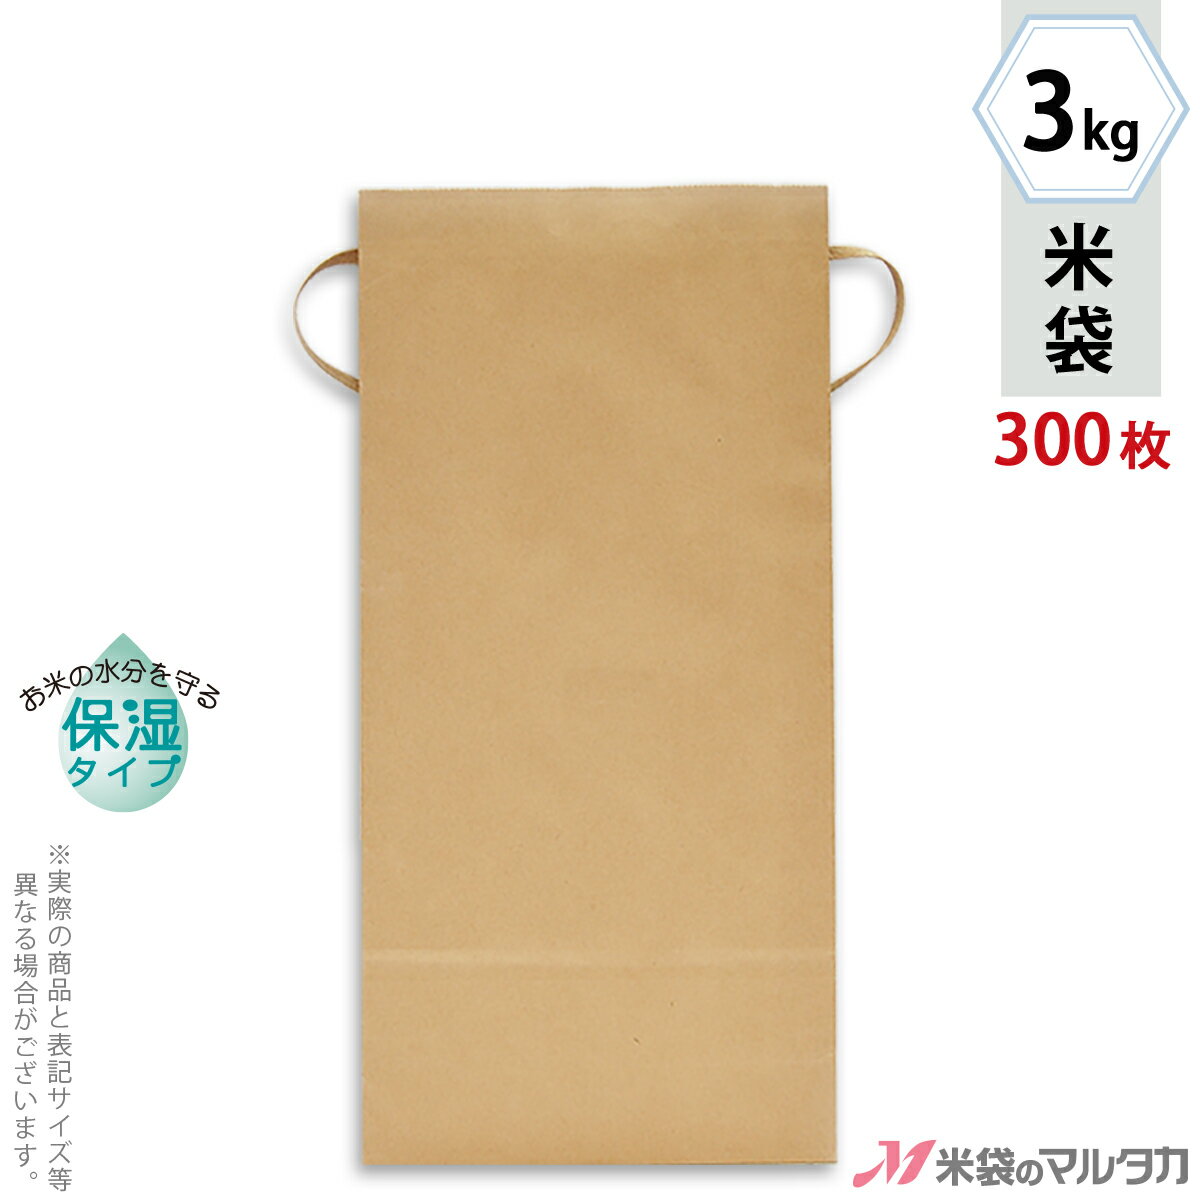 【寿】 米袋 5kg用 5枚セット H470W190D90（mm）